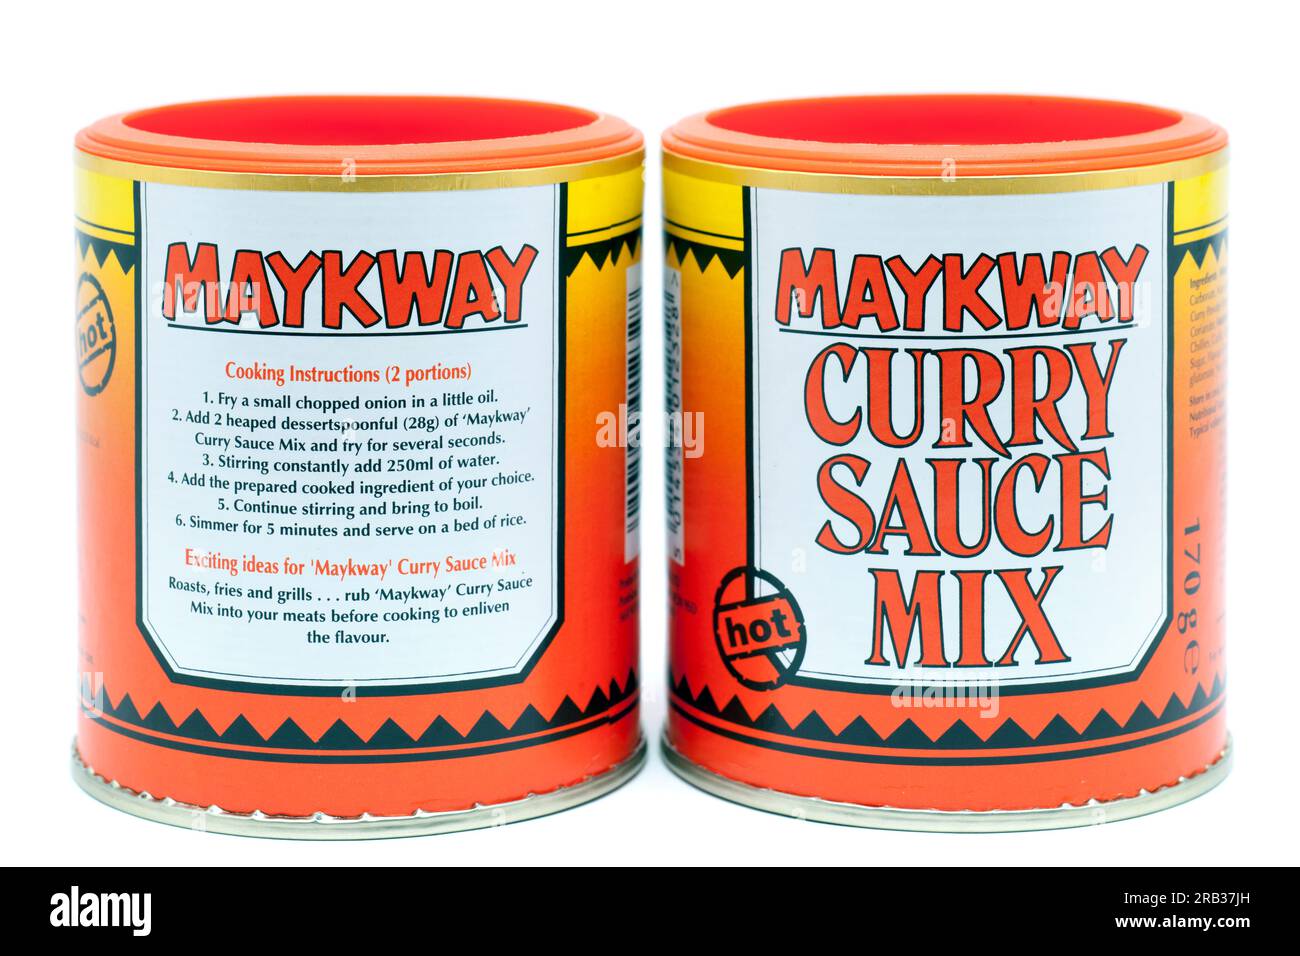 2 170 Behälter Maykway Malaysian Curry Sauce Mix Stockfoto